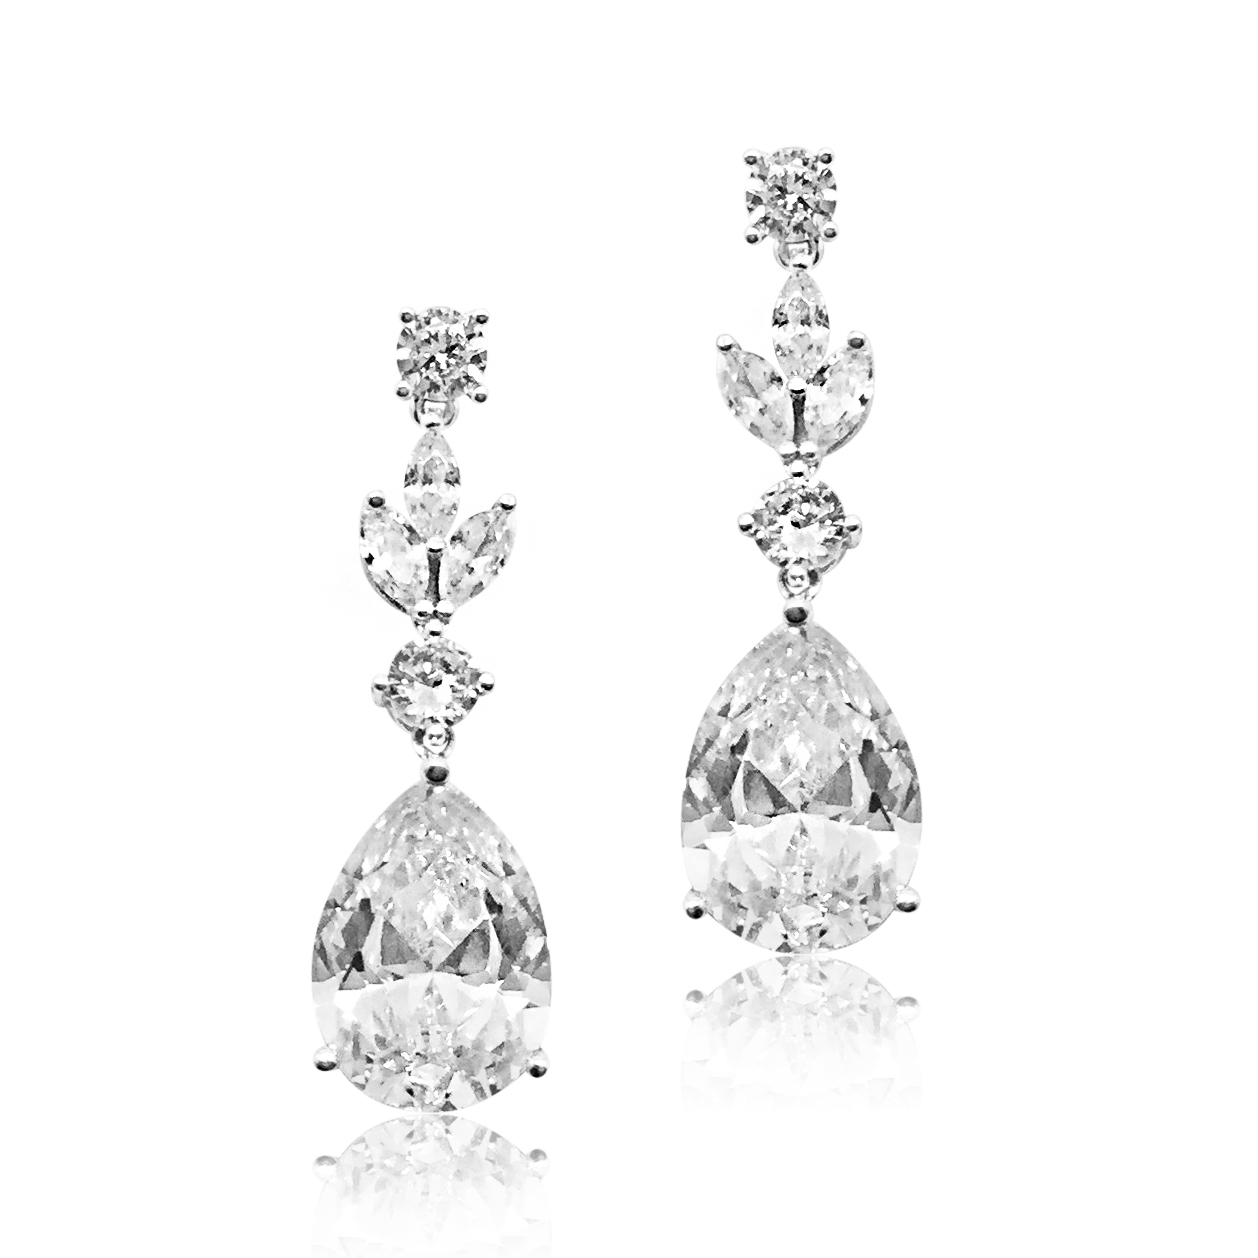 Silver Crystal Earrings Drop|Abelina|Jeanette Maree